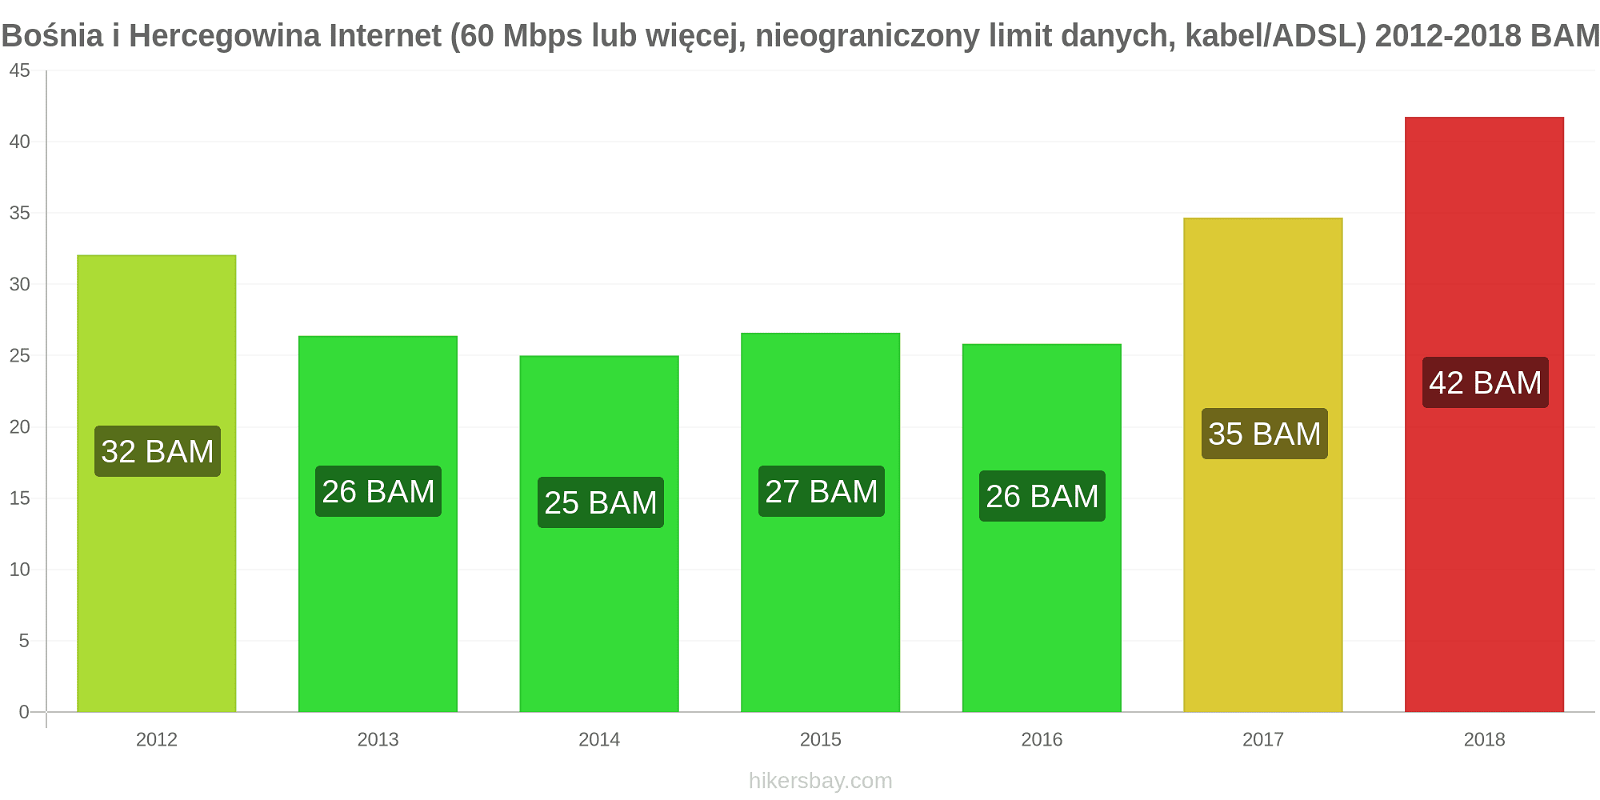 Bośnia i Hercegowina zmiany cen Internet (60 Mbps lub więcej, nieograniczony limit danych, kabel/ADSL) hikersbay.com